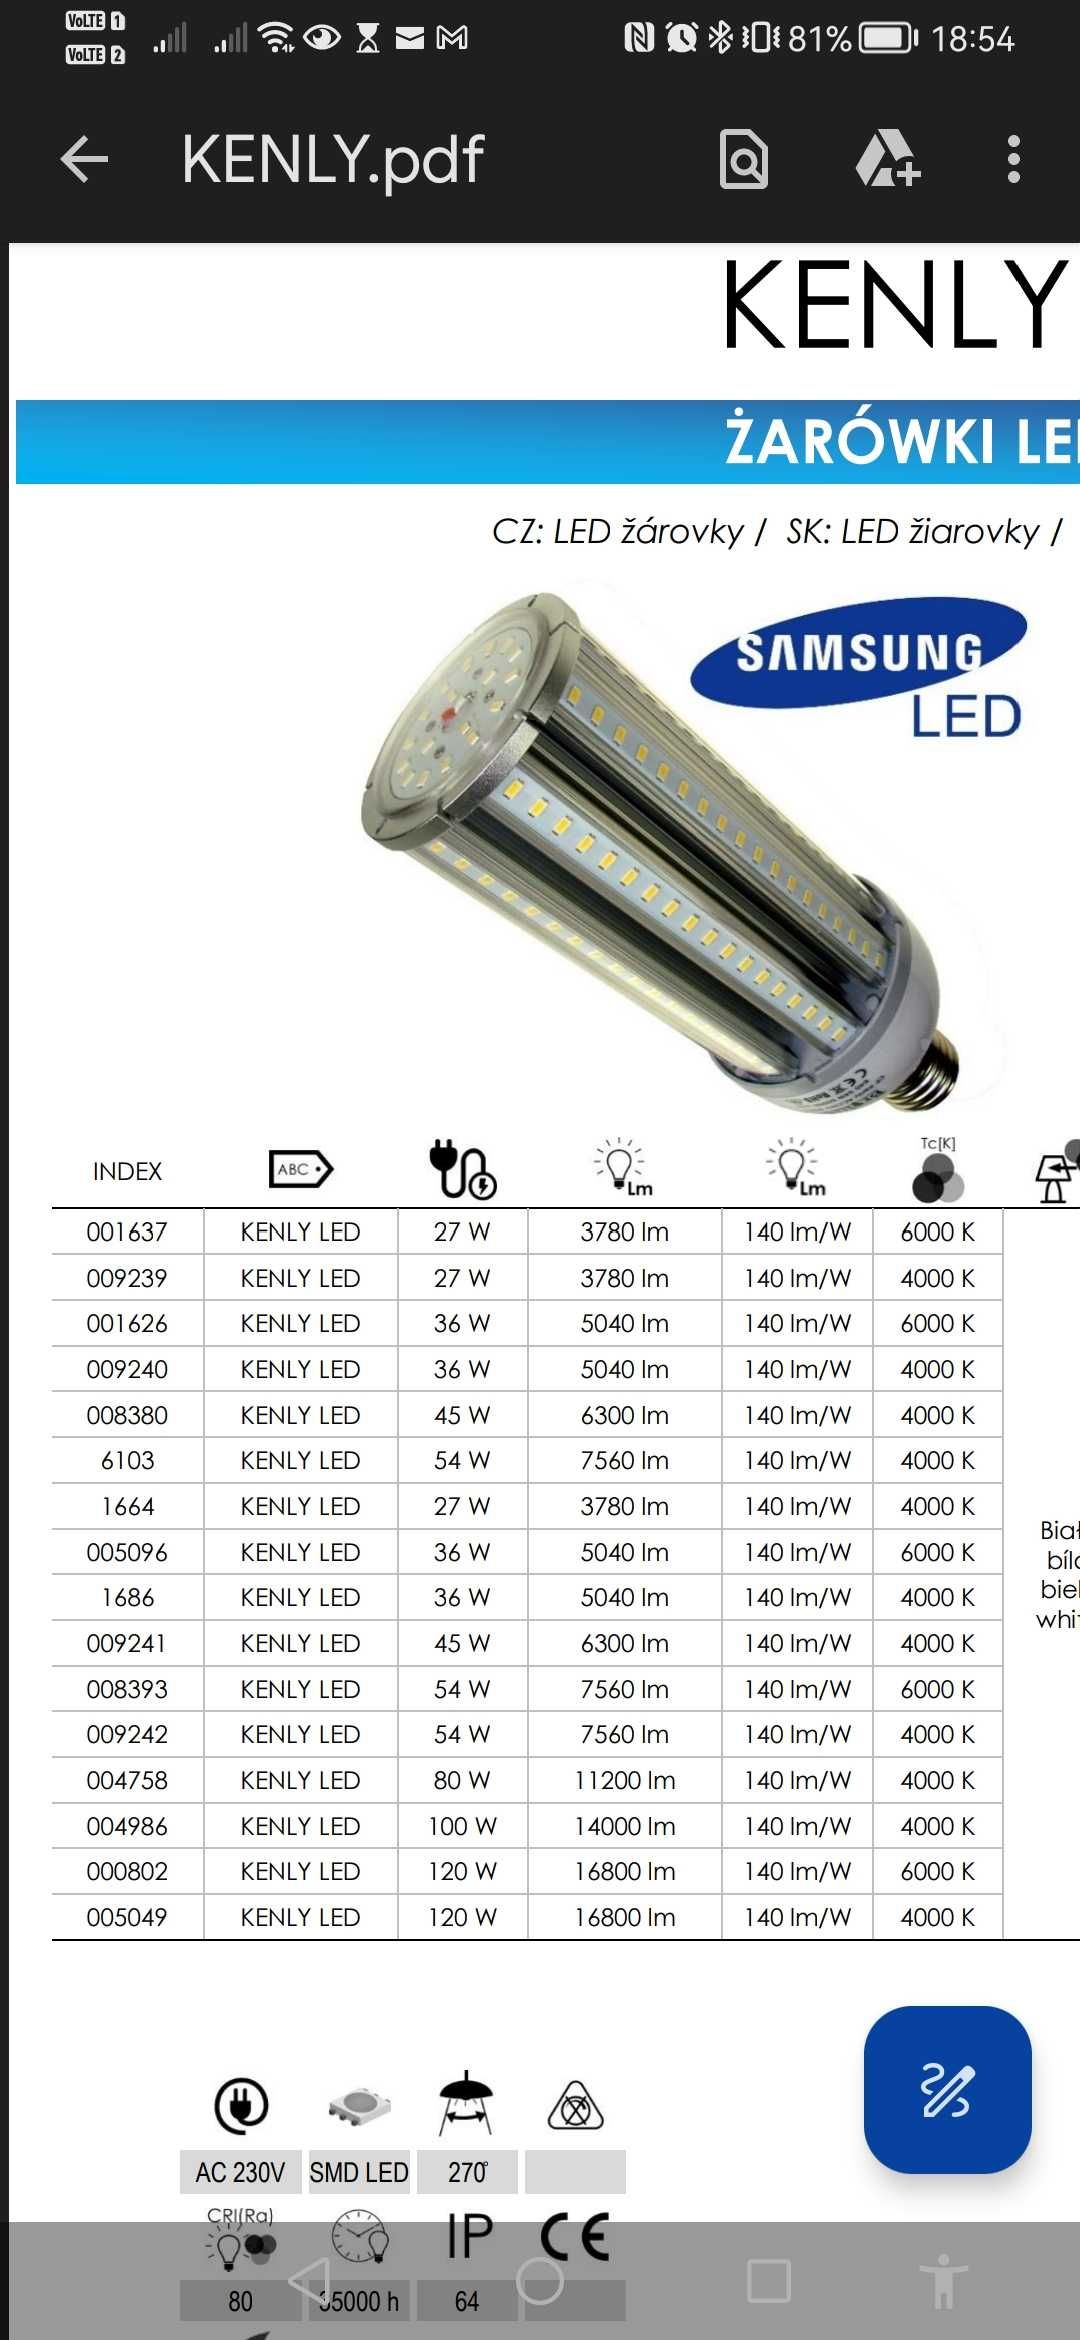 Żarówka LED kenly E27 54W Samsung nowa